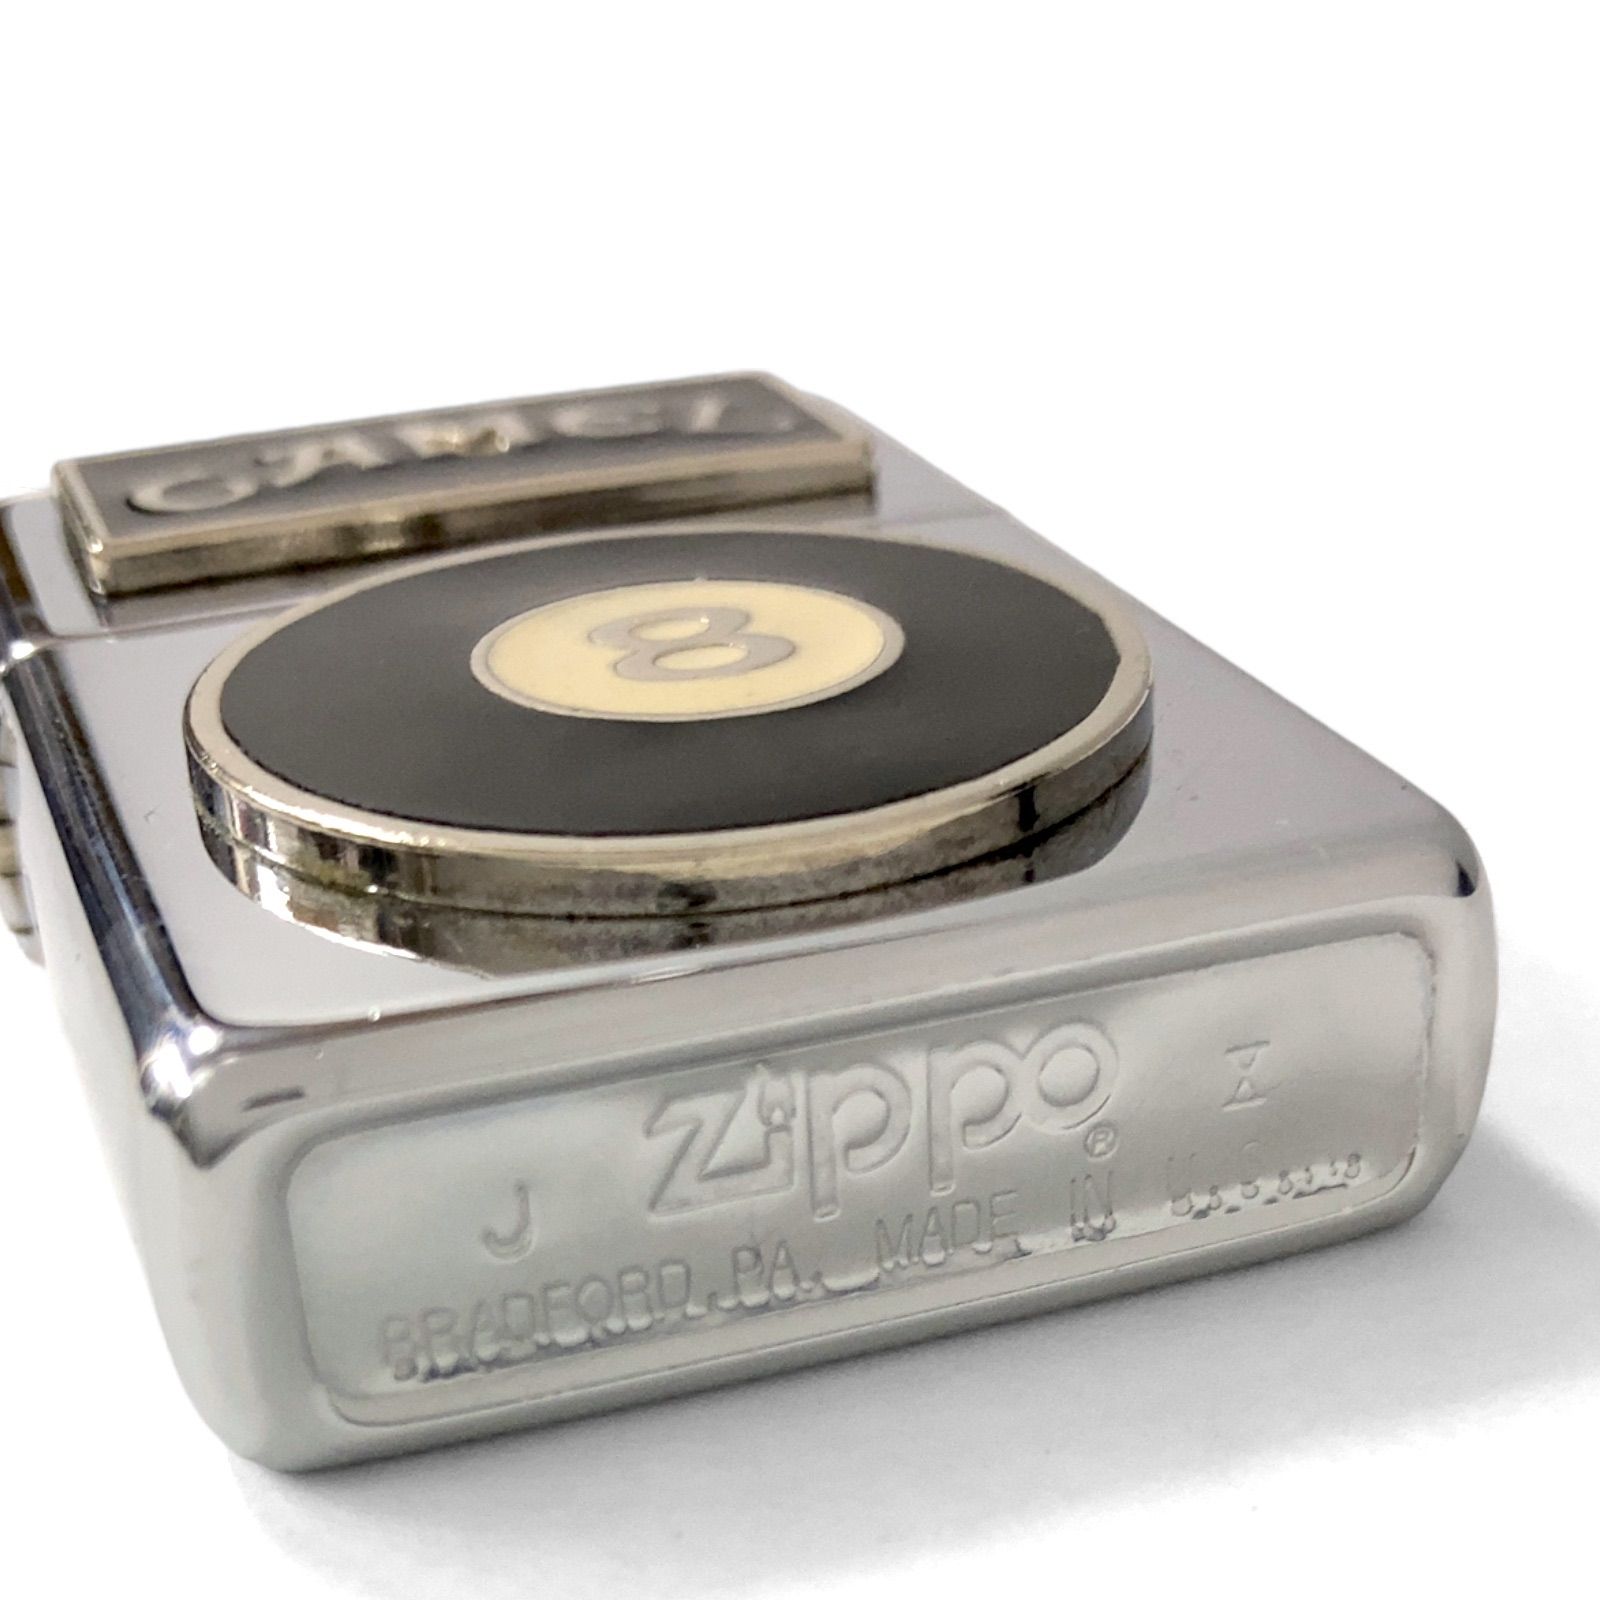 中古品】94年製 Zippo ジッポ CAMEL キャメル 8ボール ライター 喫煙具 